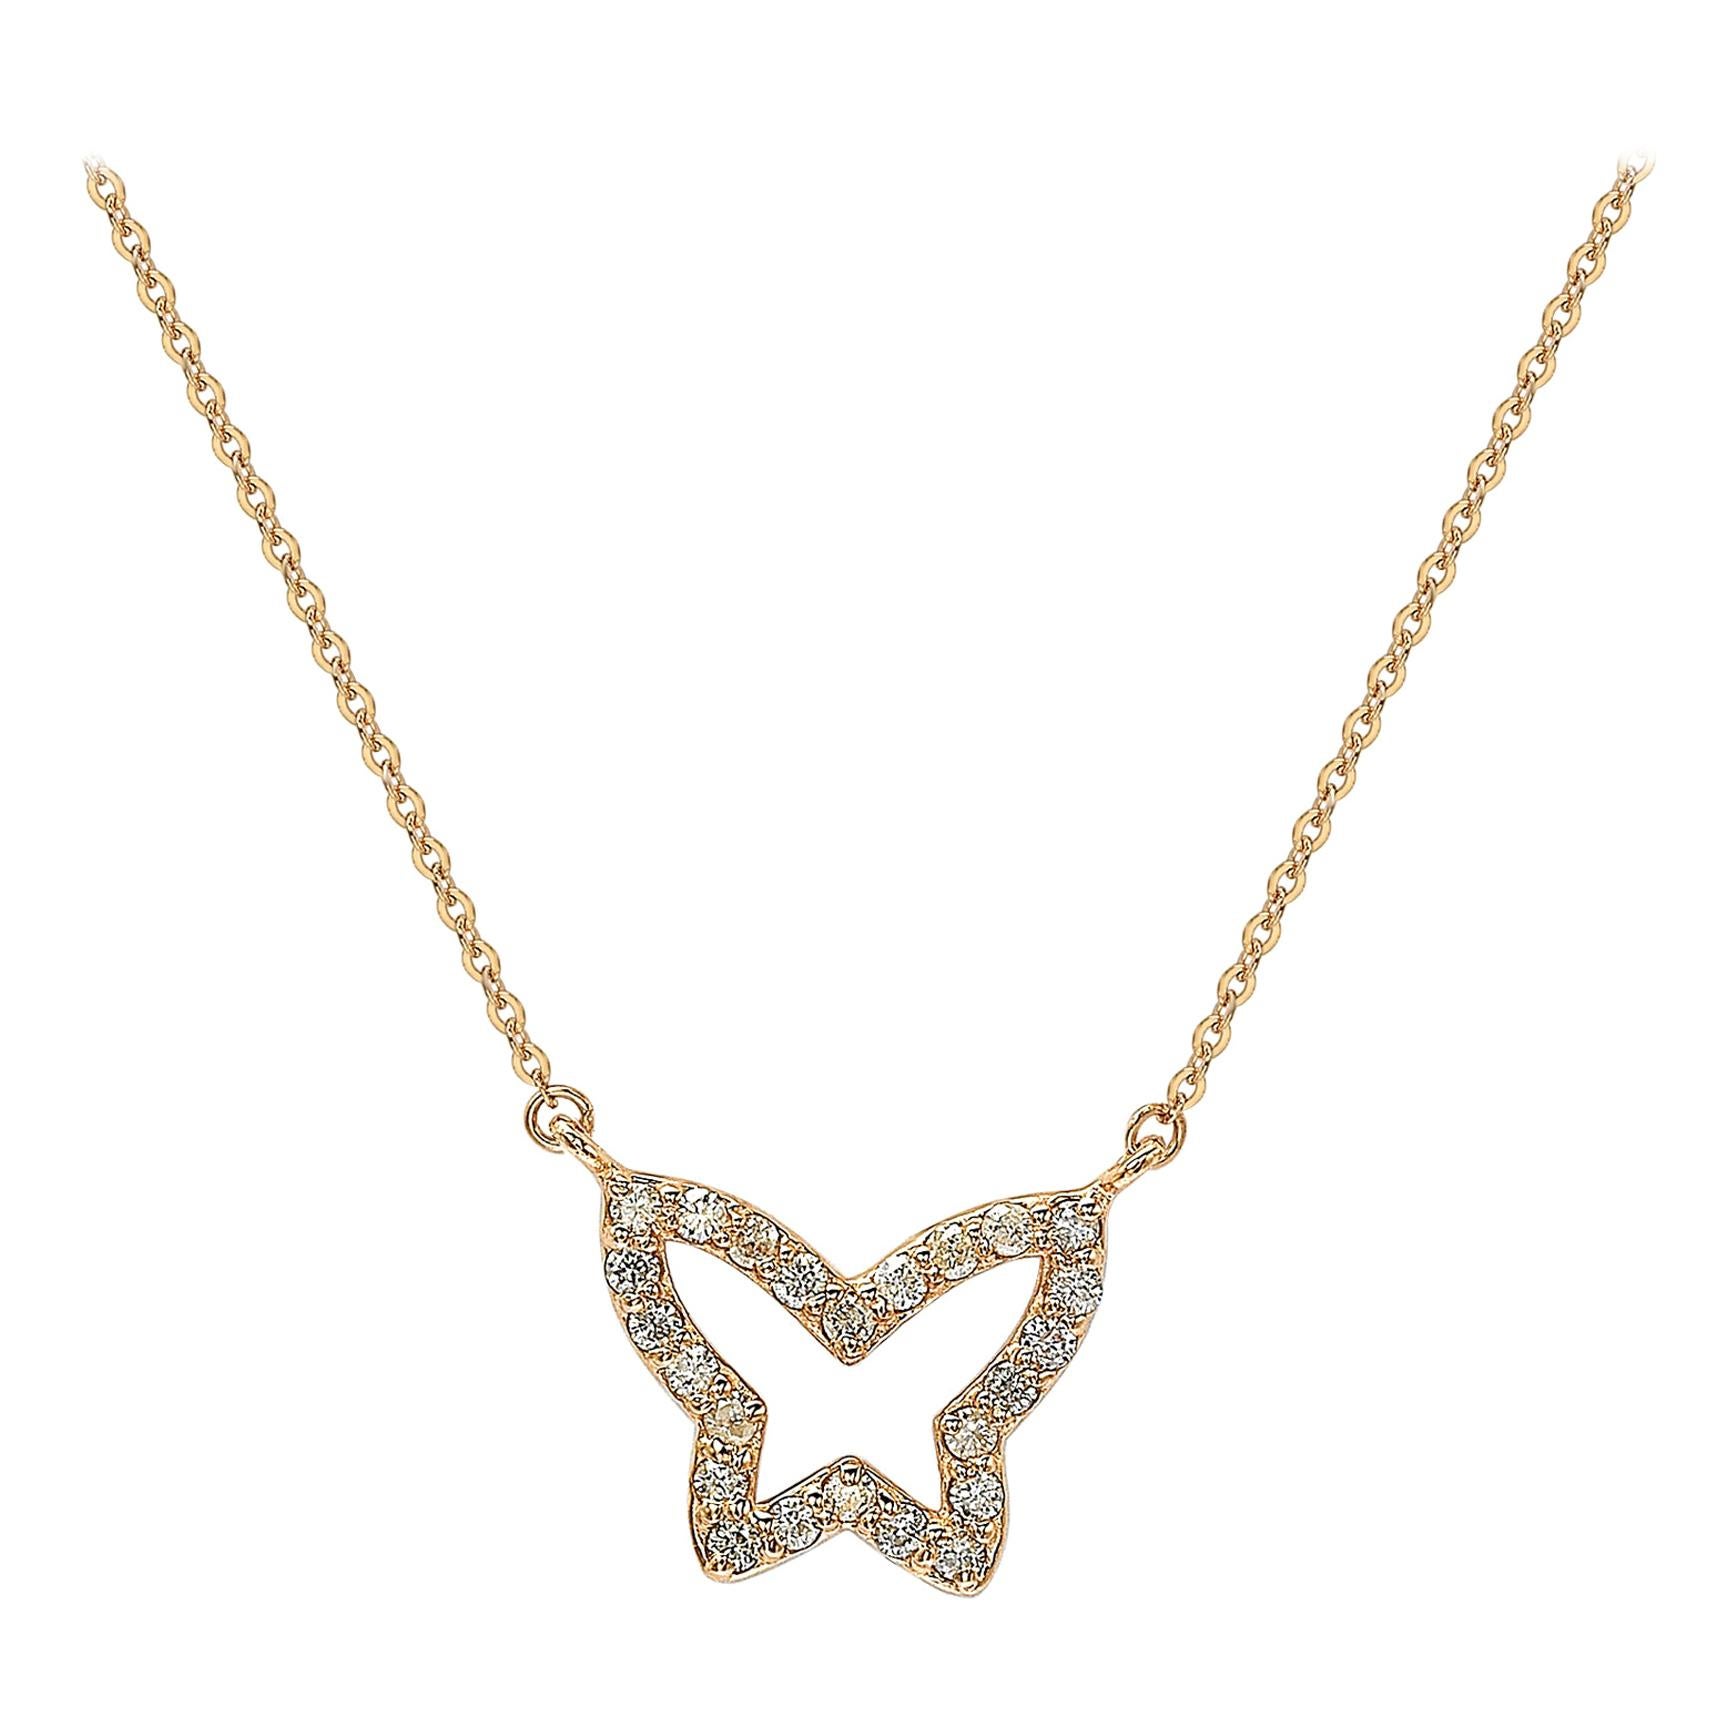 Halskette mit Schmetterlingsmotiv von Suzy Levian, 14 Karat Roségold, weißer Diamant